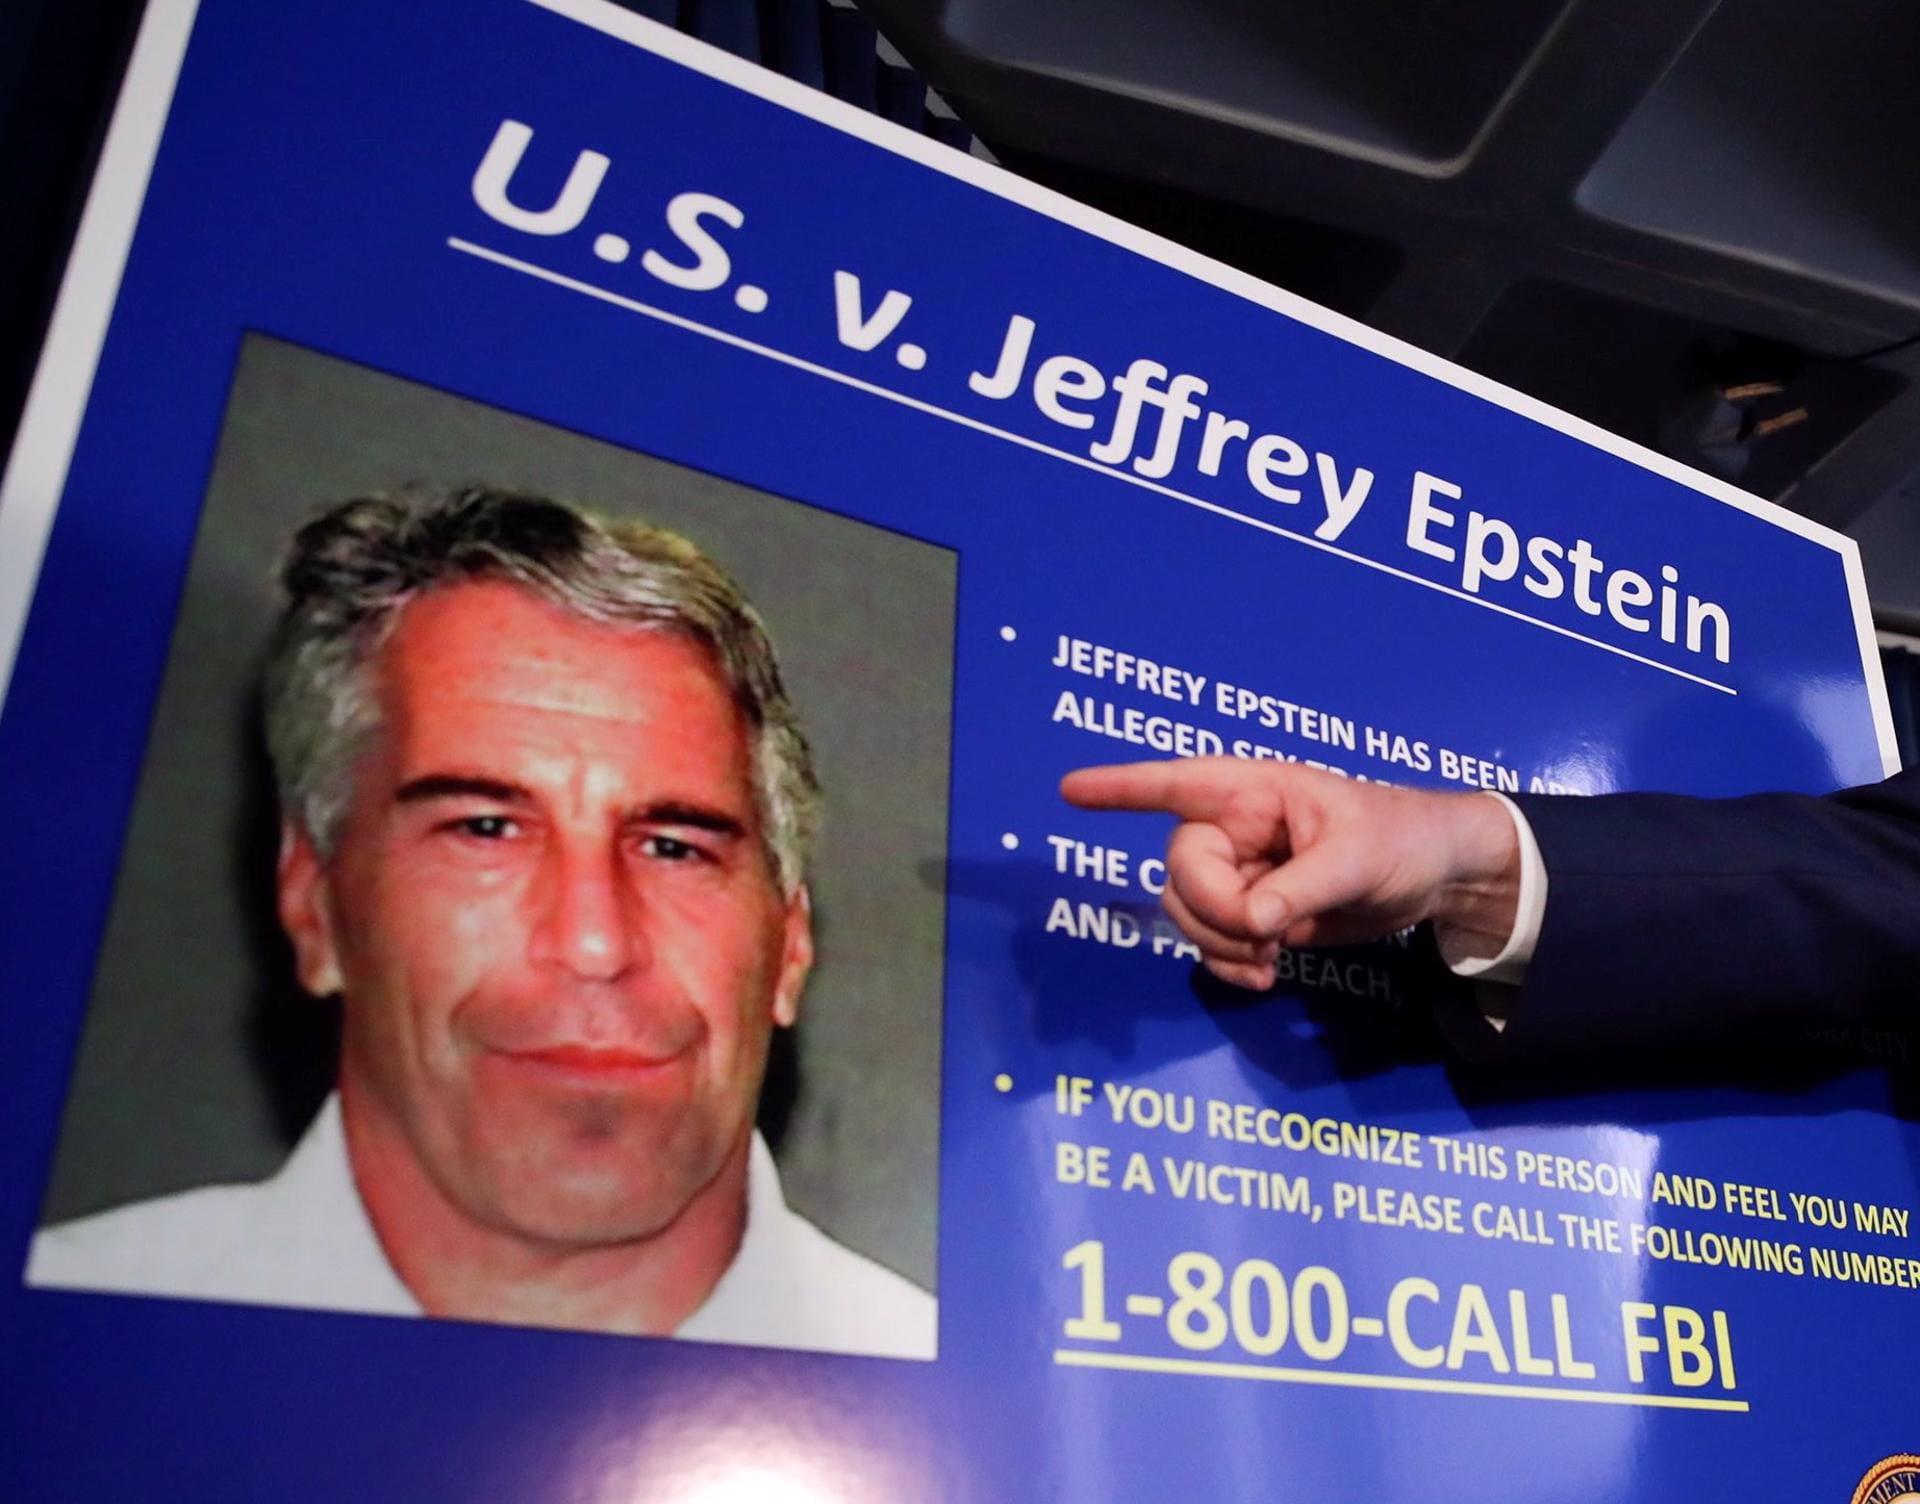 Lista de Epstein reveló demasiado: Víctimas e involucrados dicen ‘temer por su seguridad’       